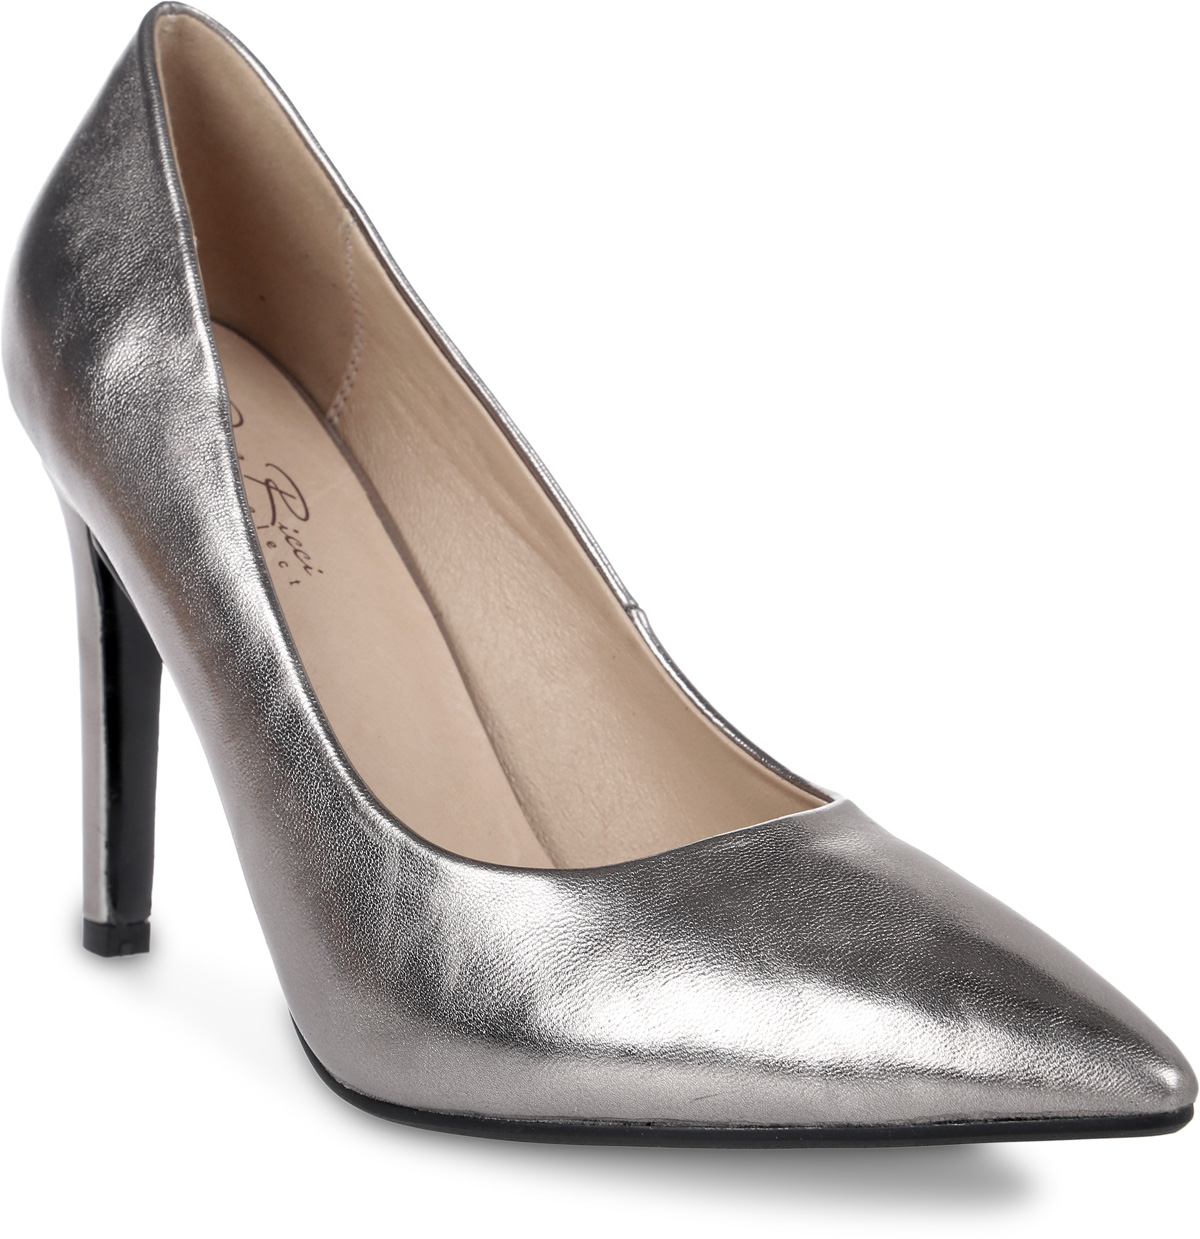 Туфли женские Dino Ricci, цвет: серый металлик. 435-199-01. Размер 36